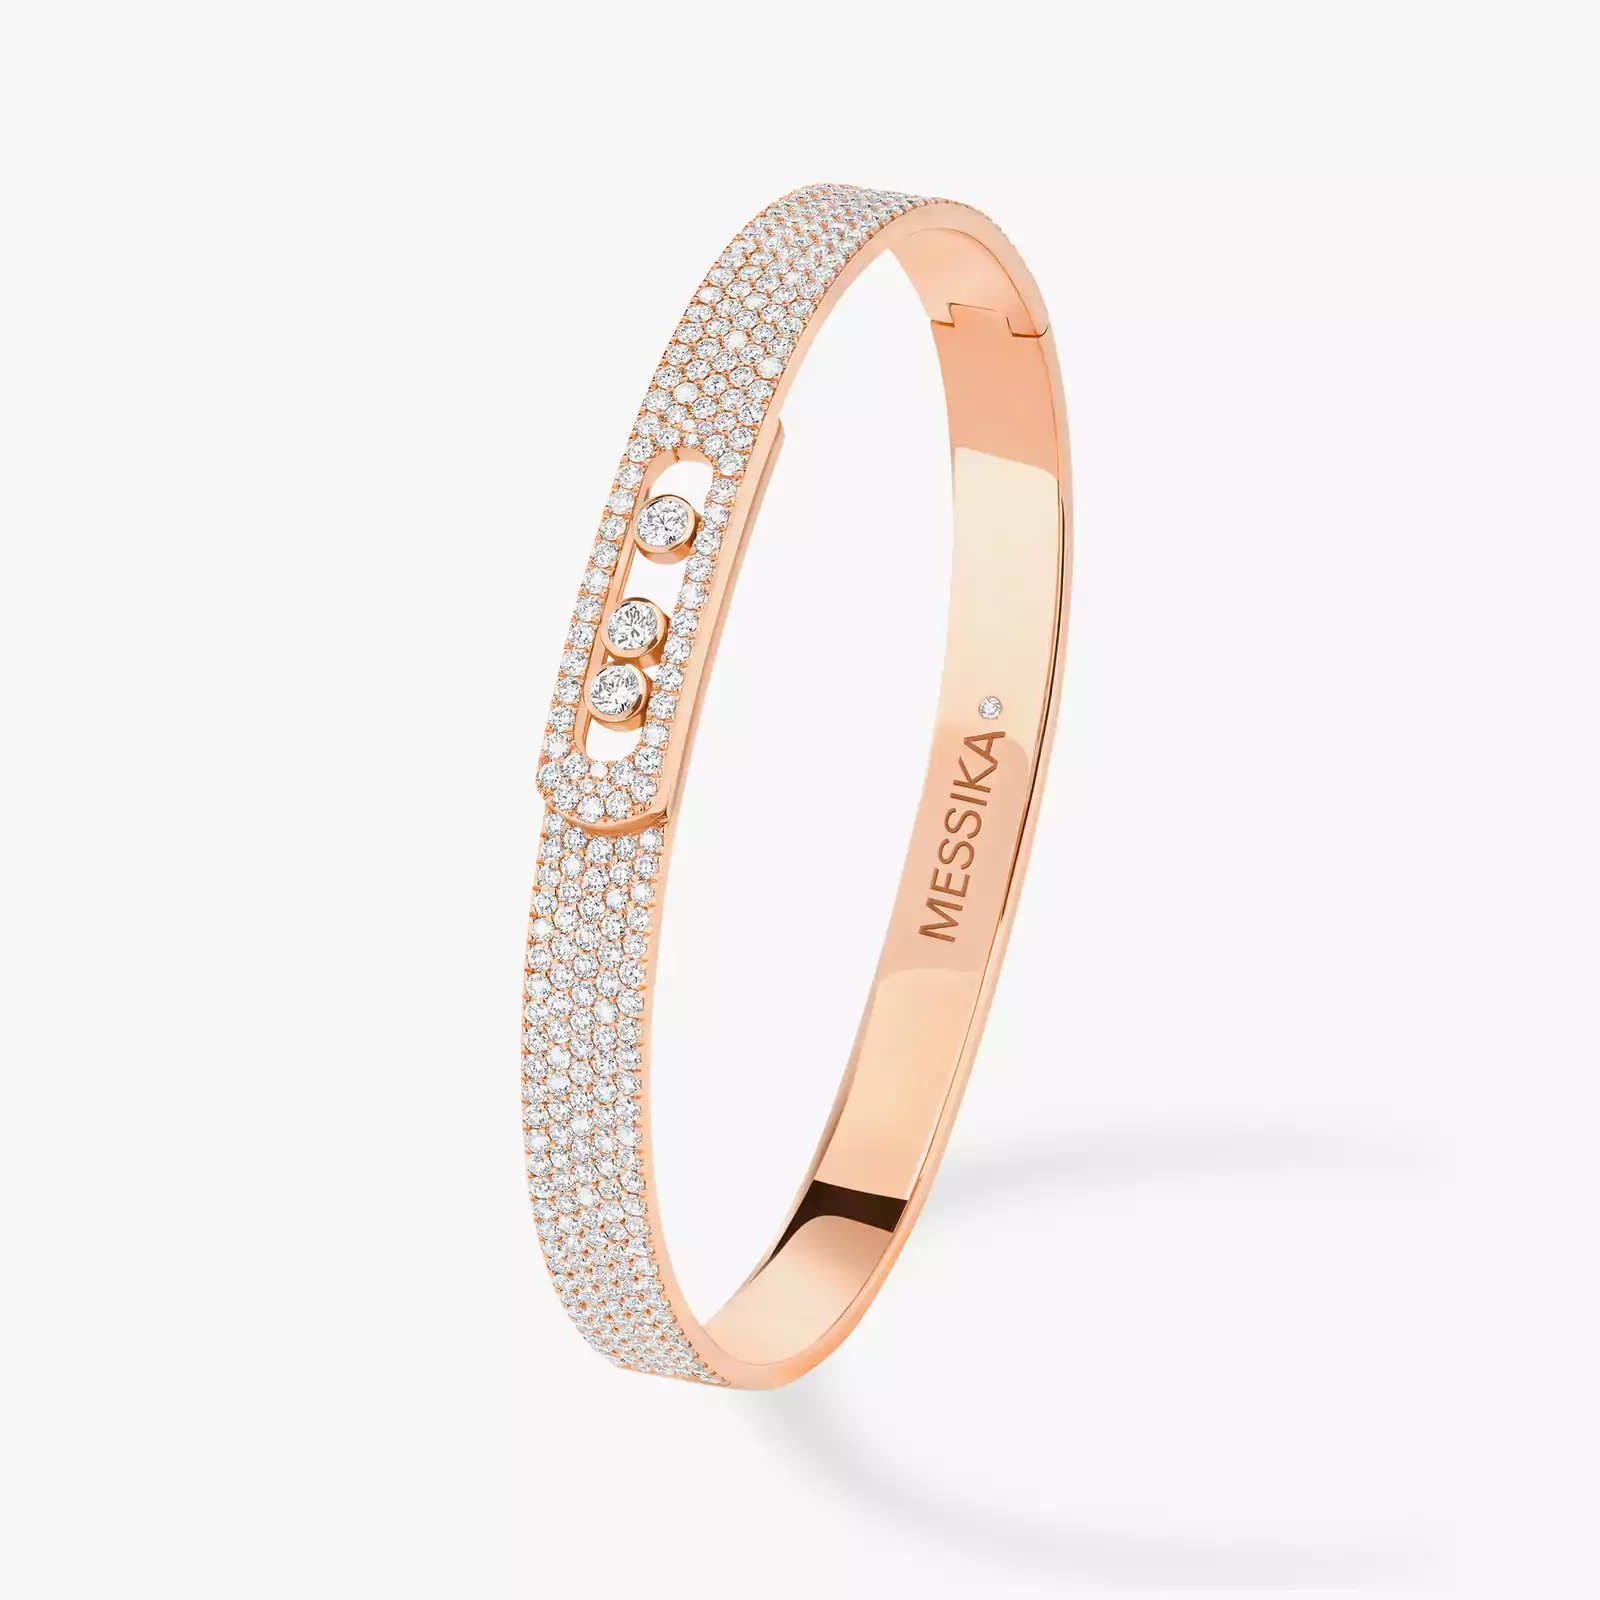 Move Noa Full Pavé Bangle Pink Gold For Her Diamond Bracelet 12722-PG